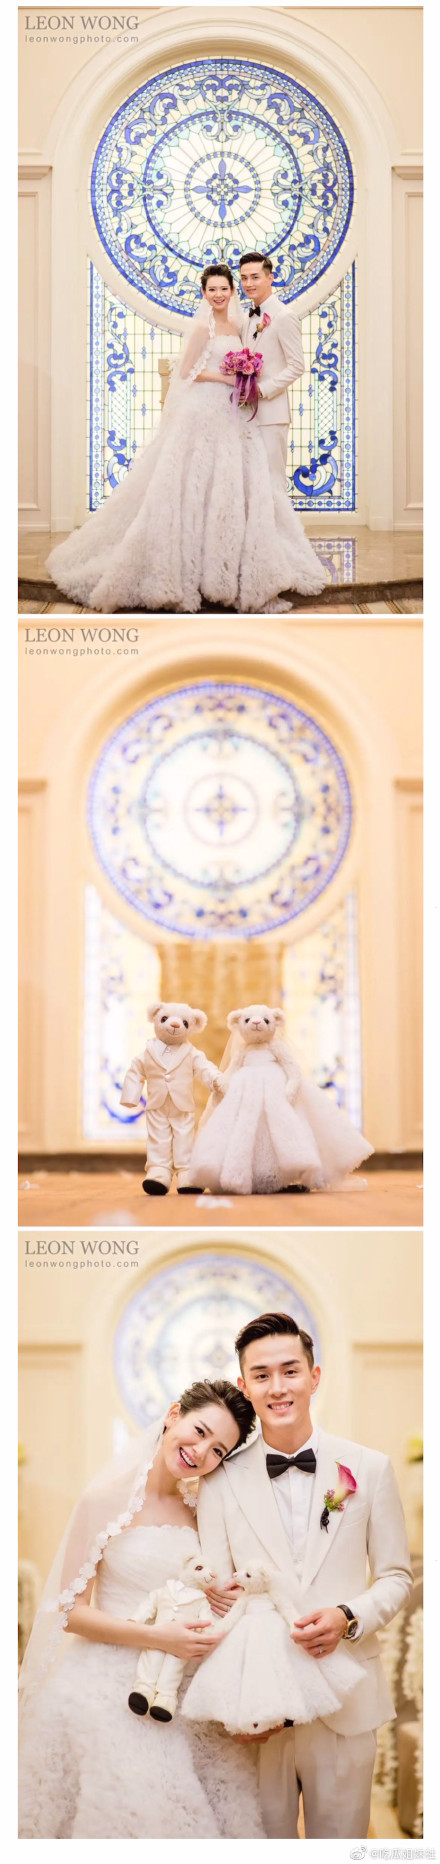 戚薇李承铉的婚礼照片曝光 戚薇和李承铉的婚礼视频